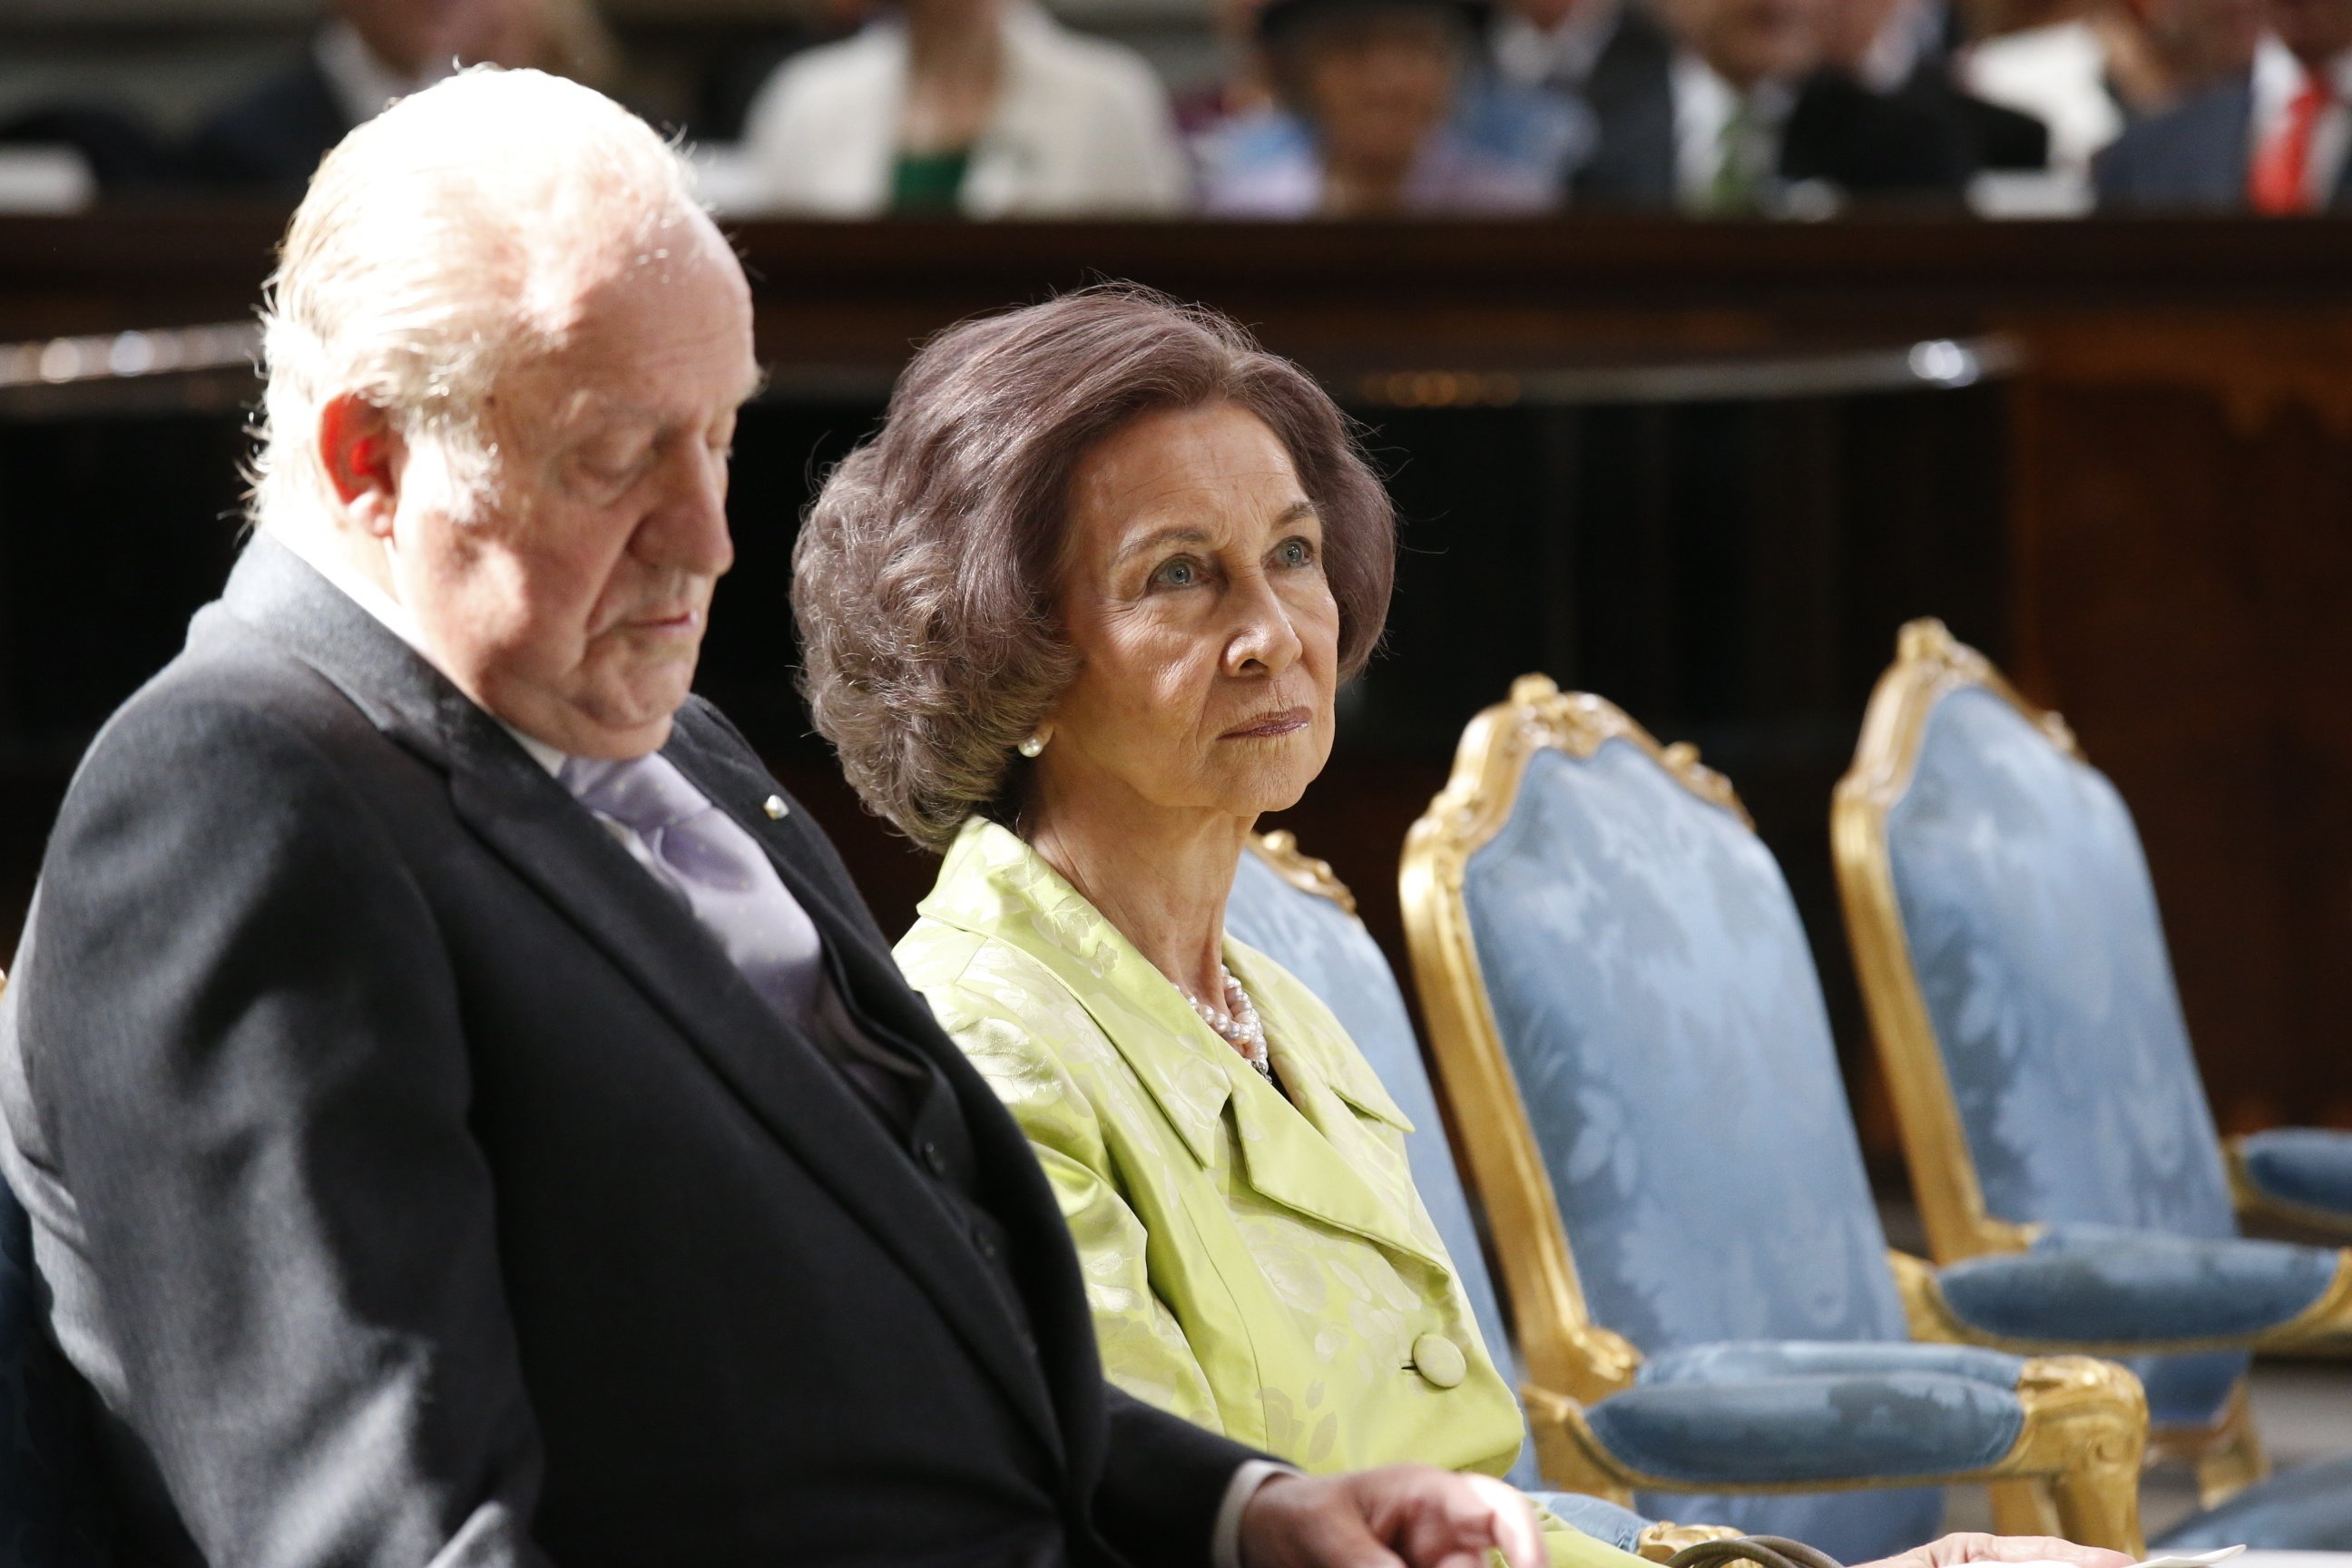 Peñafiel: "La reina Sofía ha fracasado como esposa, madre y mujer"